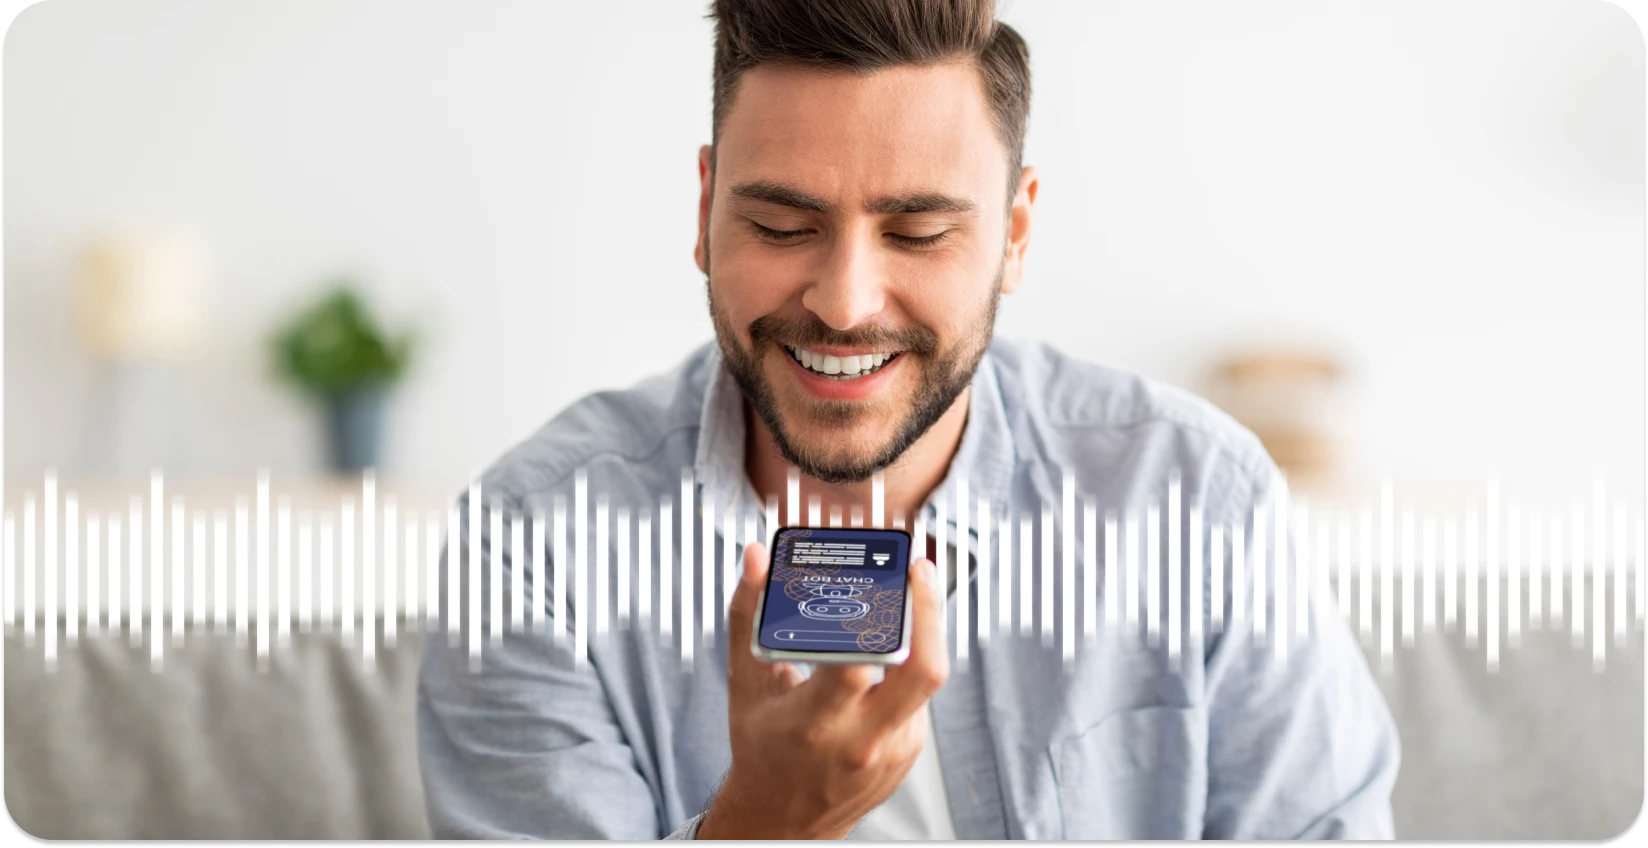 Homem sorrindo enquanto usa um aplicativo de smartphone para cortar ondas de áudio, melhorando a experiência de edição on-line.